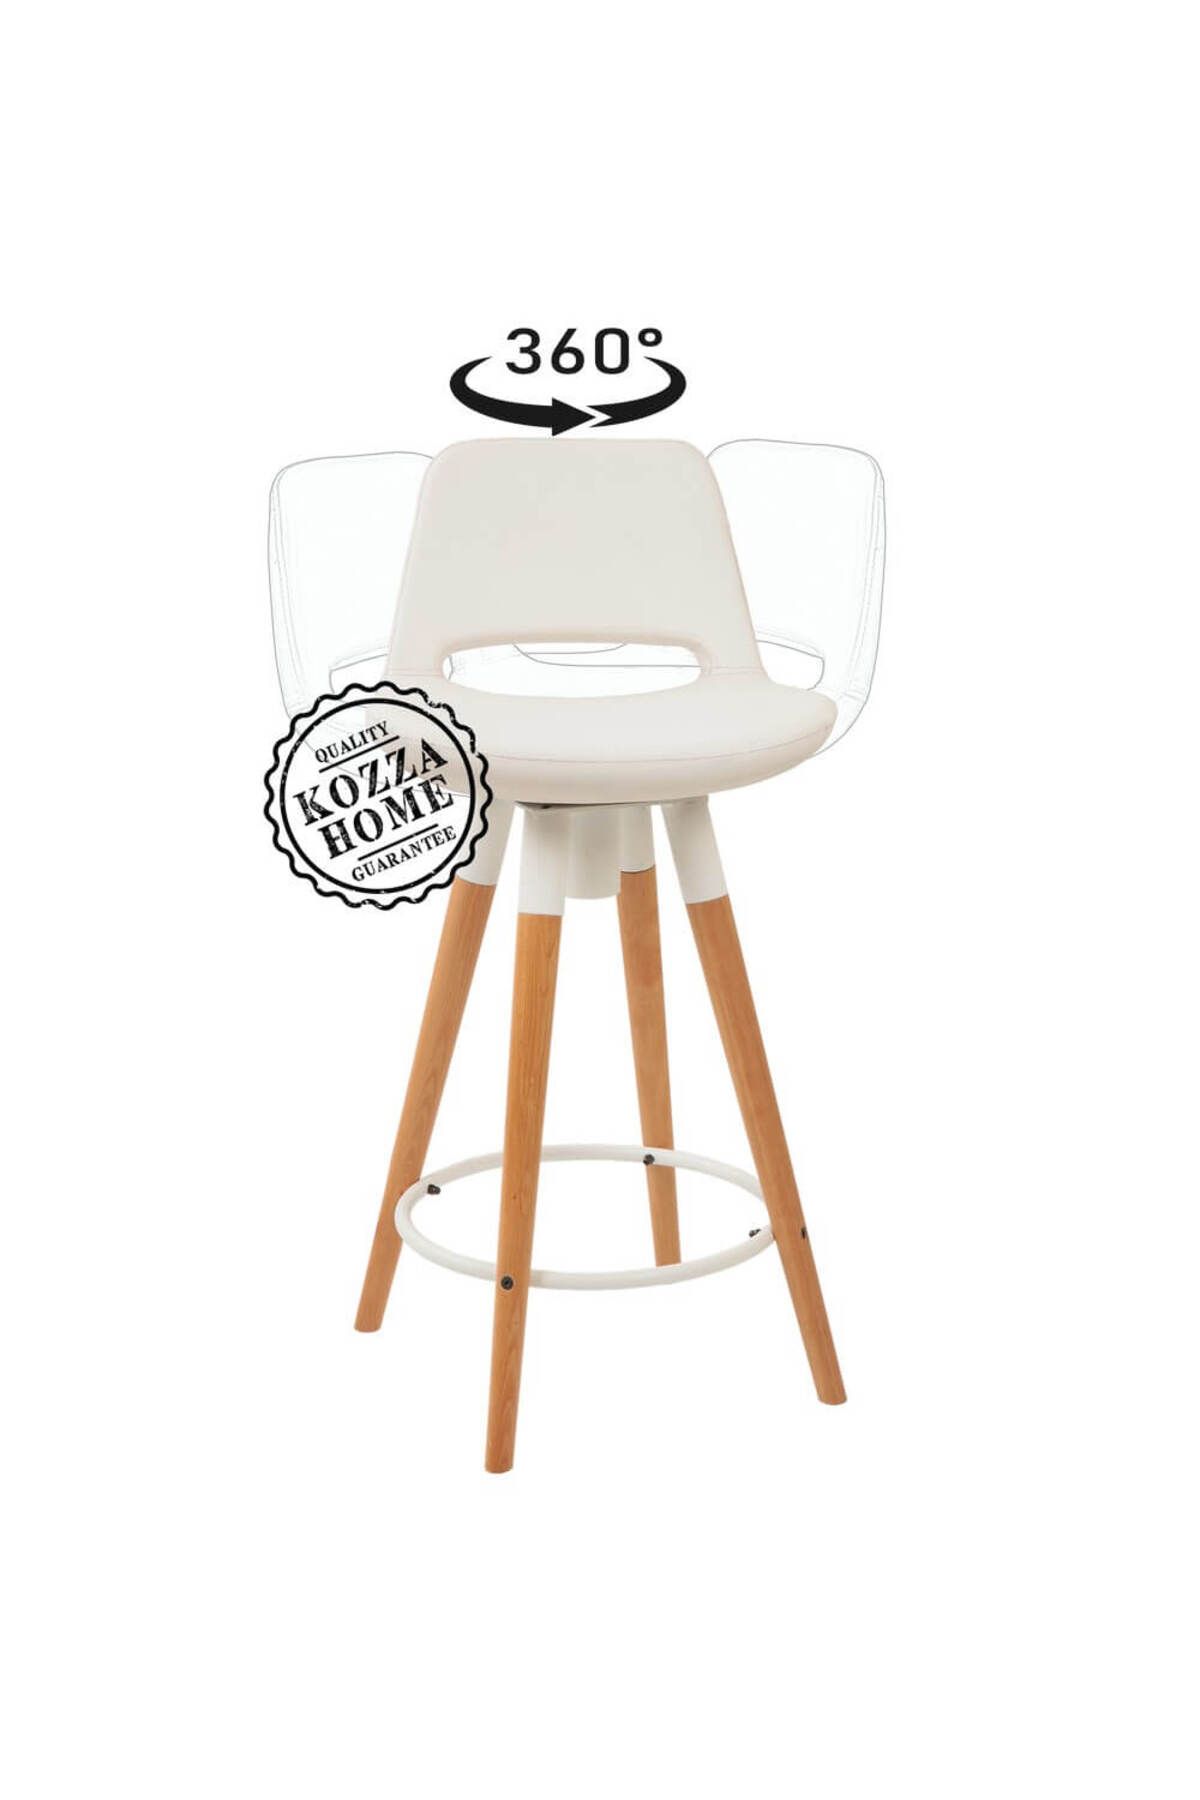 KOZZA HOME Retro 360 Döner Oturum Bar Sandalye Naturel - Beyaz - 65 cm